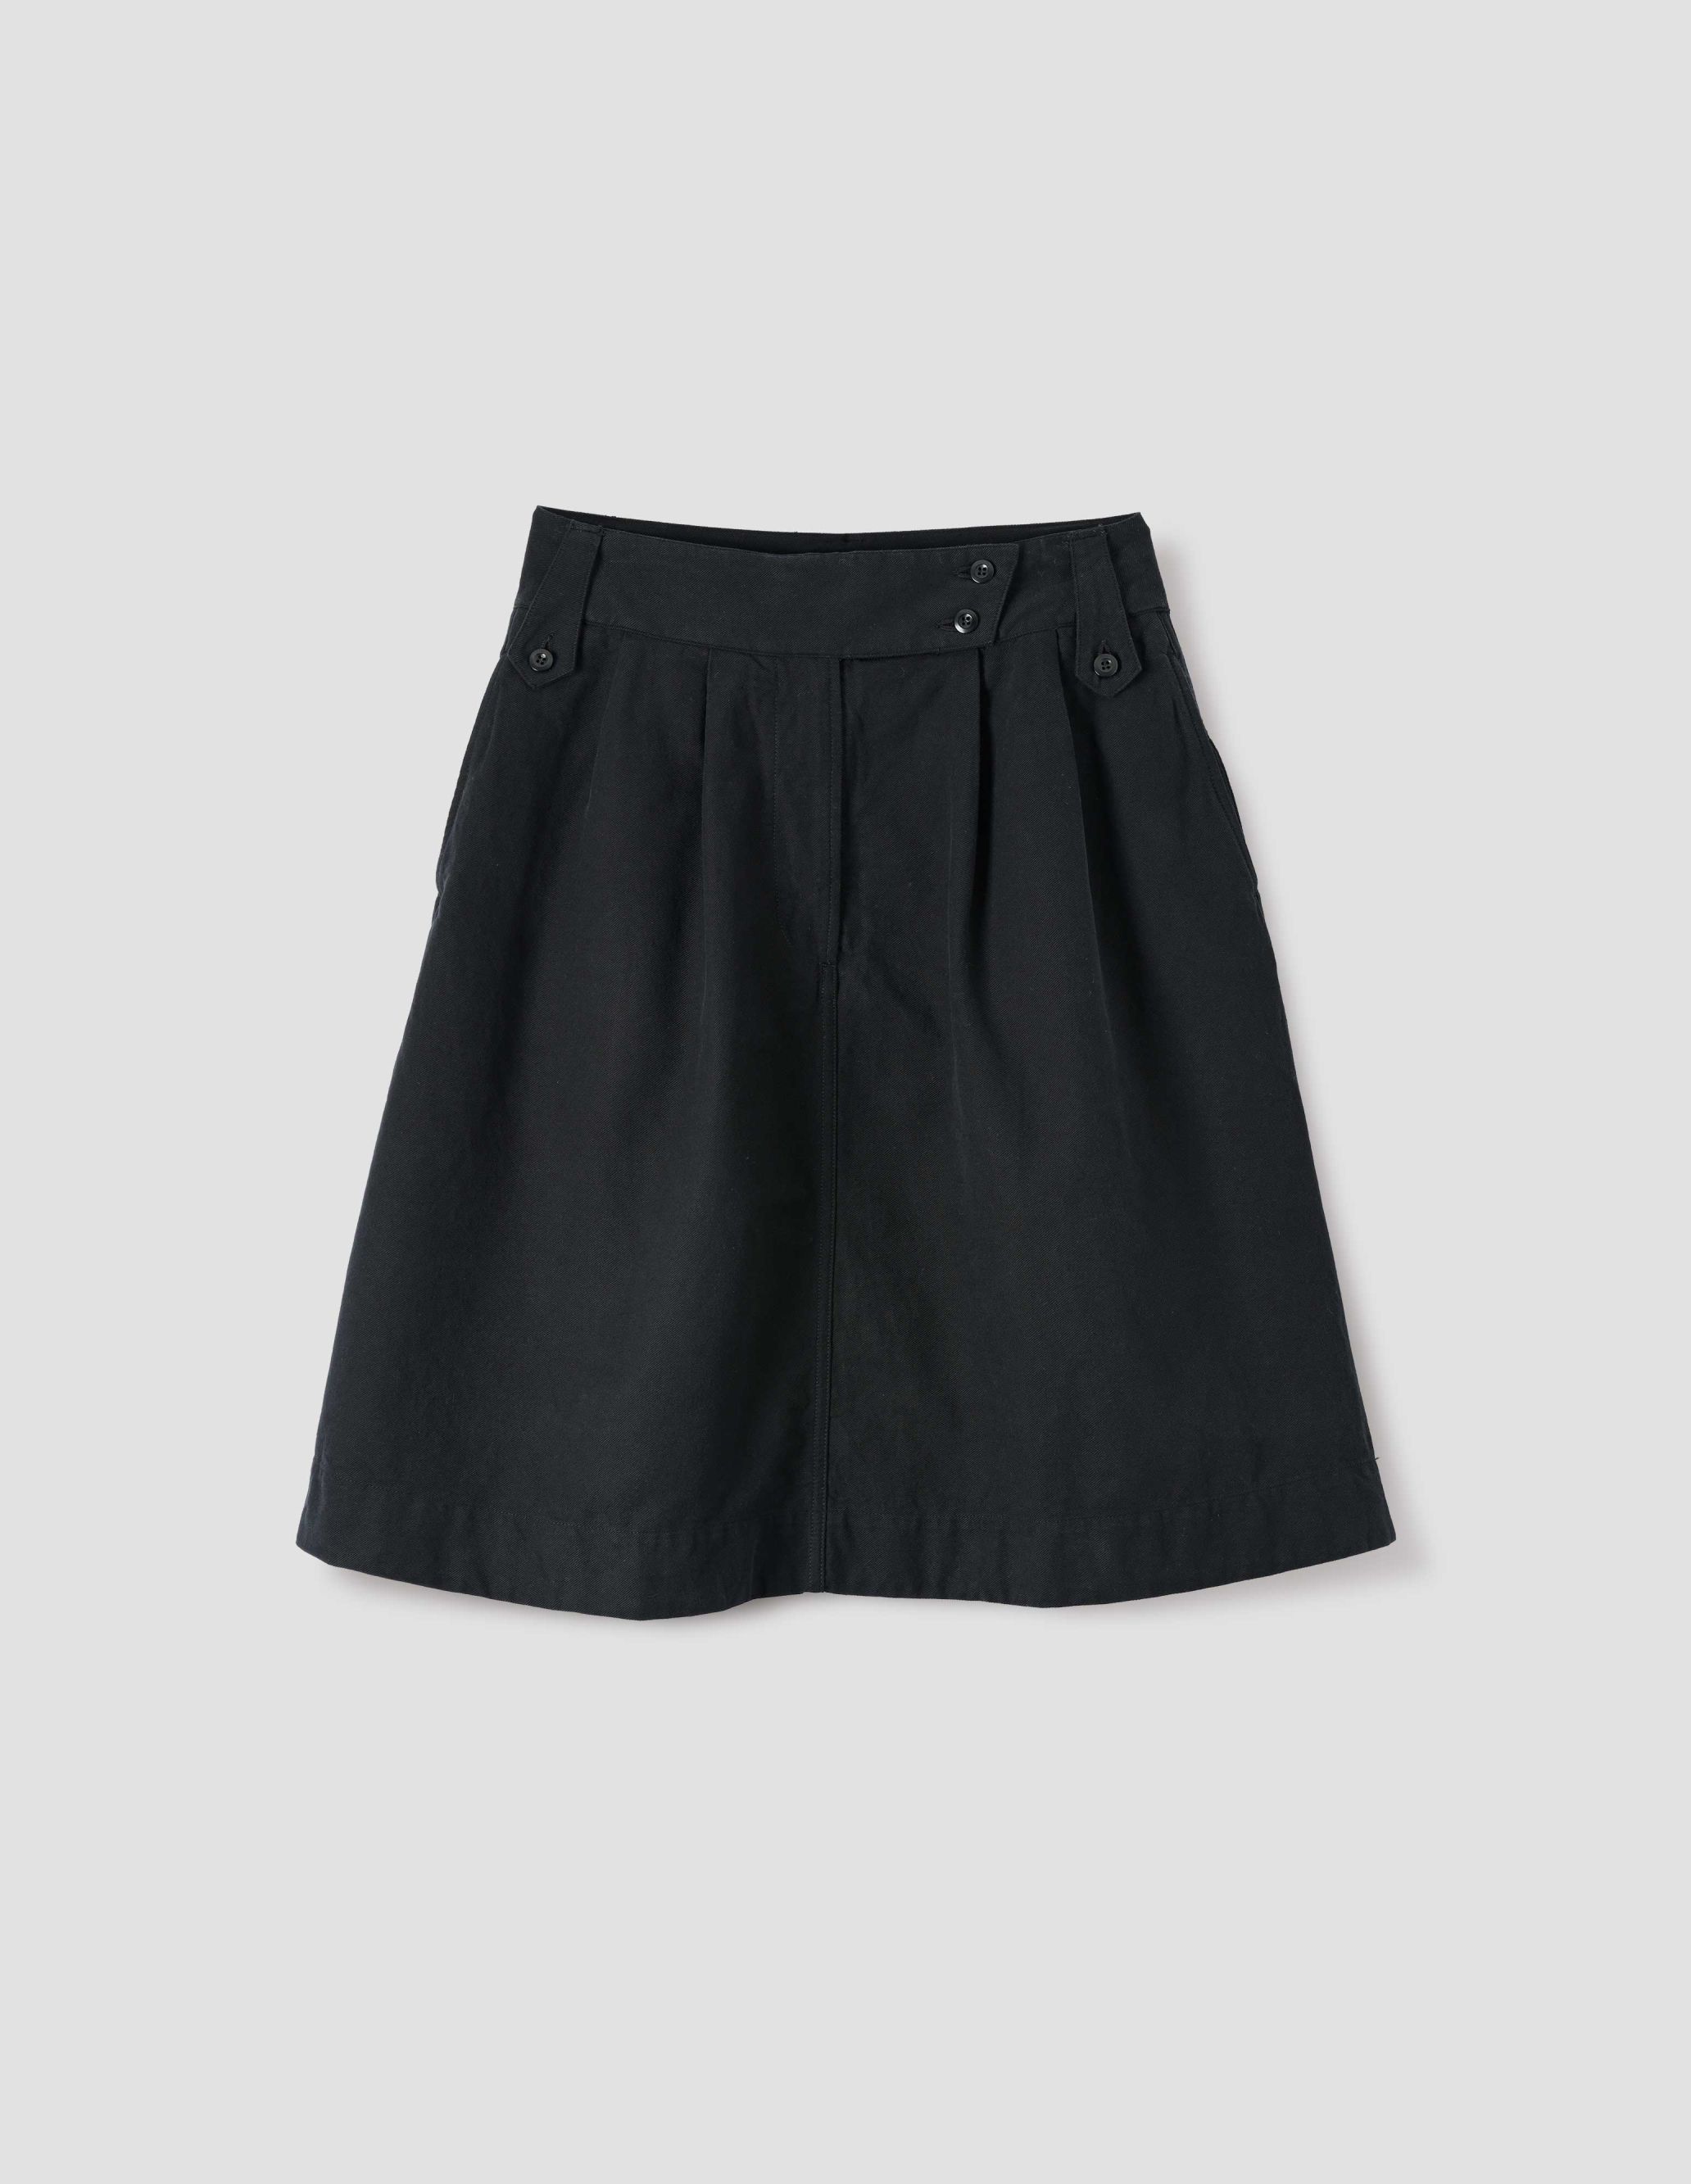 MARGARET HOWELL - Black cotton drill uniform skirt | MHL. by Margaret ...